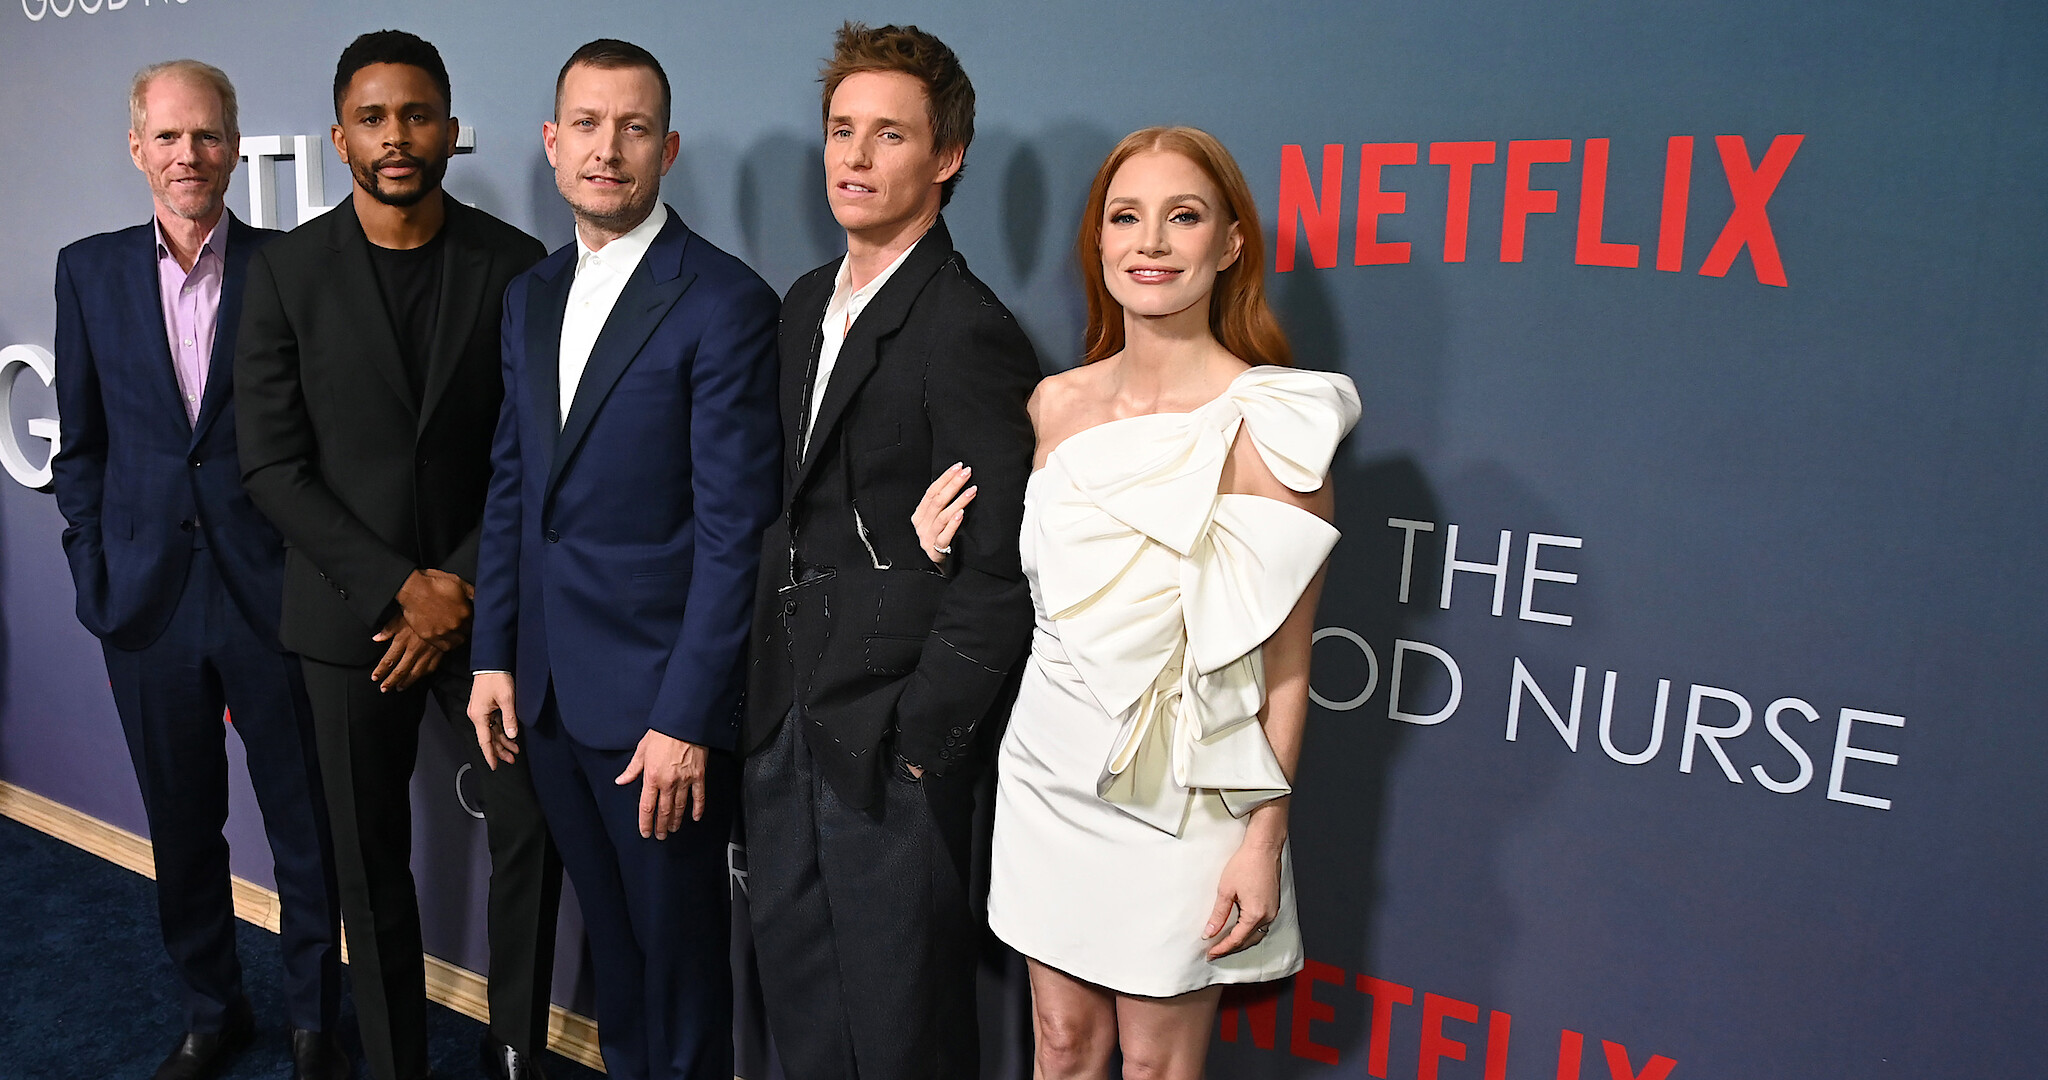 Stranger Things' Cast Red Carpet Premiere Photos - Netflix Tudum